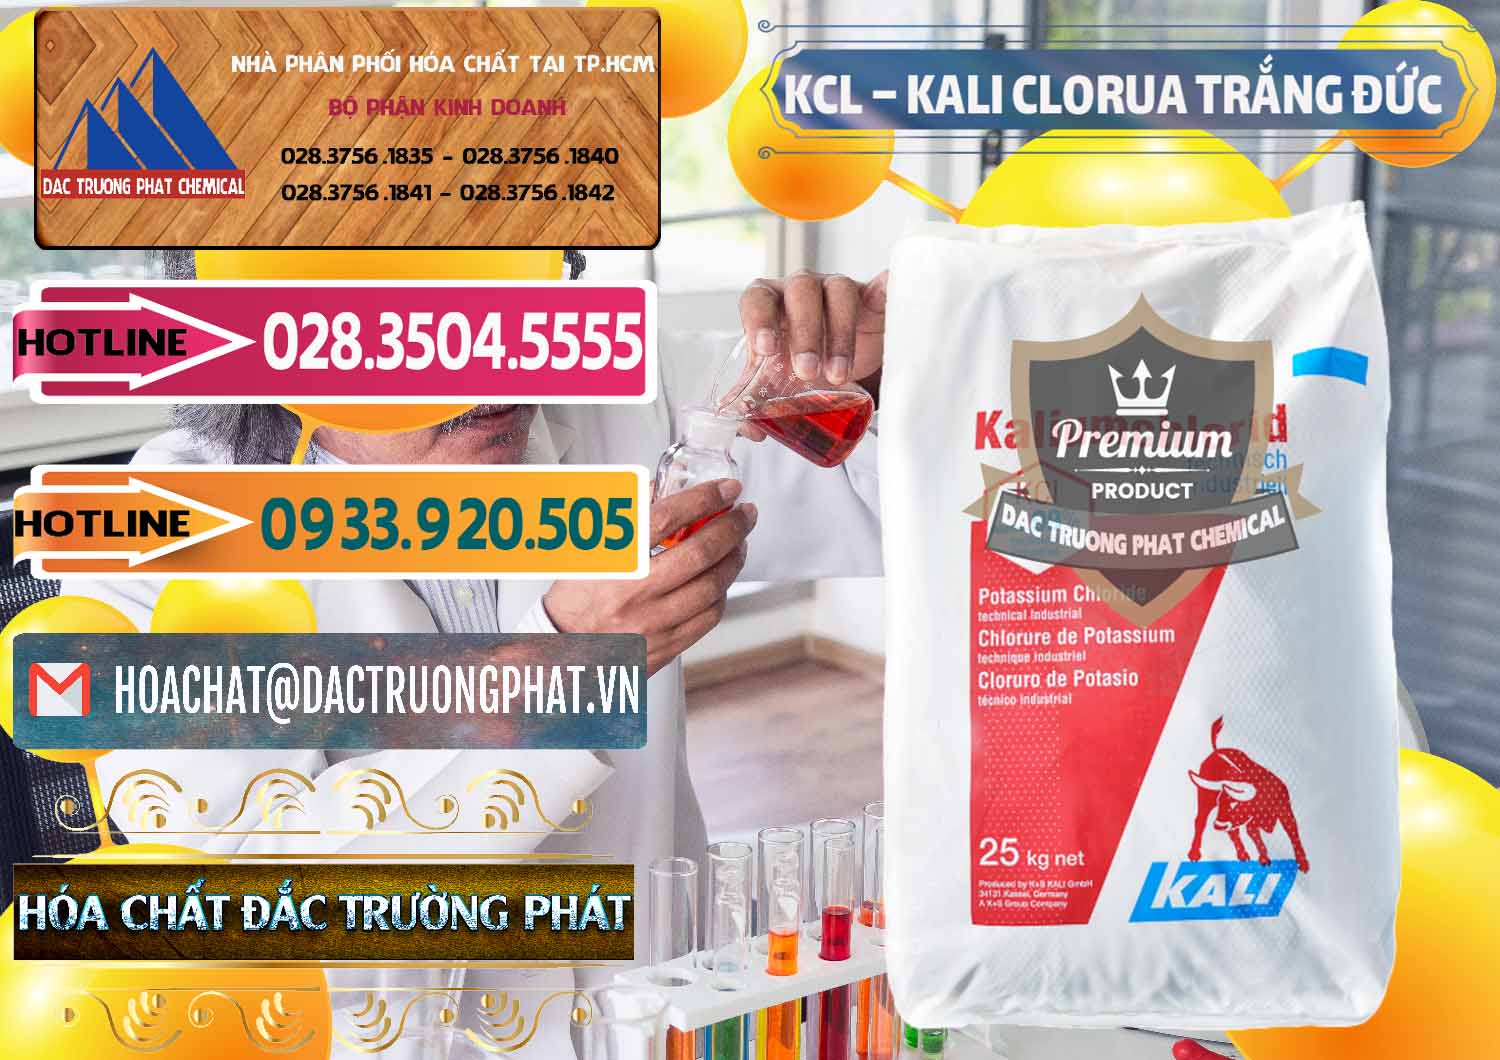 Đơn vị chuyên phân phối _ bán KCL – Kali Clorua Trắng Đức Germany - 0086 - Chuyên phân phối và nhập khẩu hóa chất tại TP.HCM - dactruongphat.vn